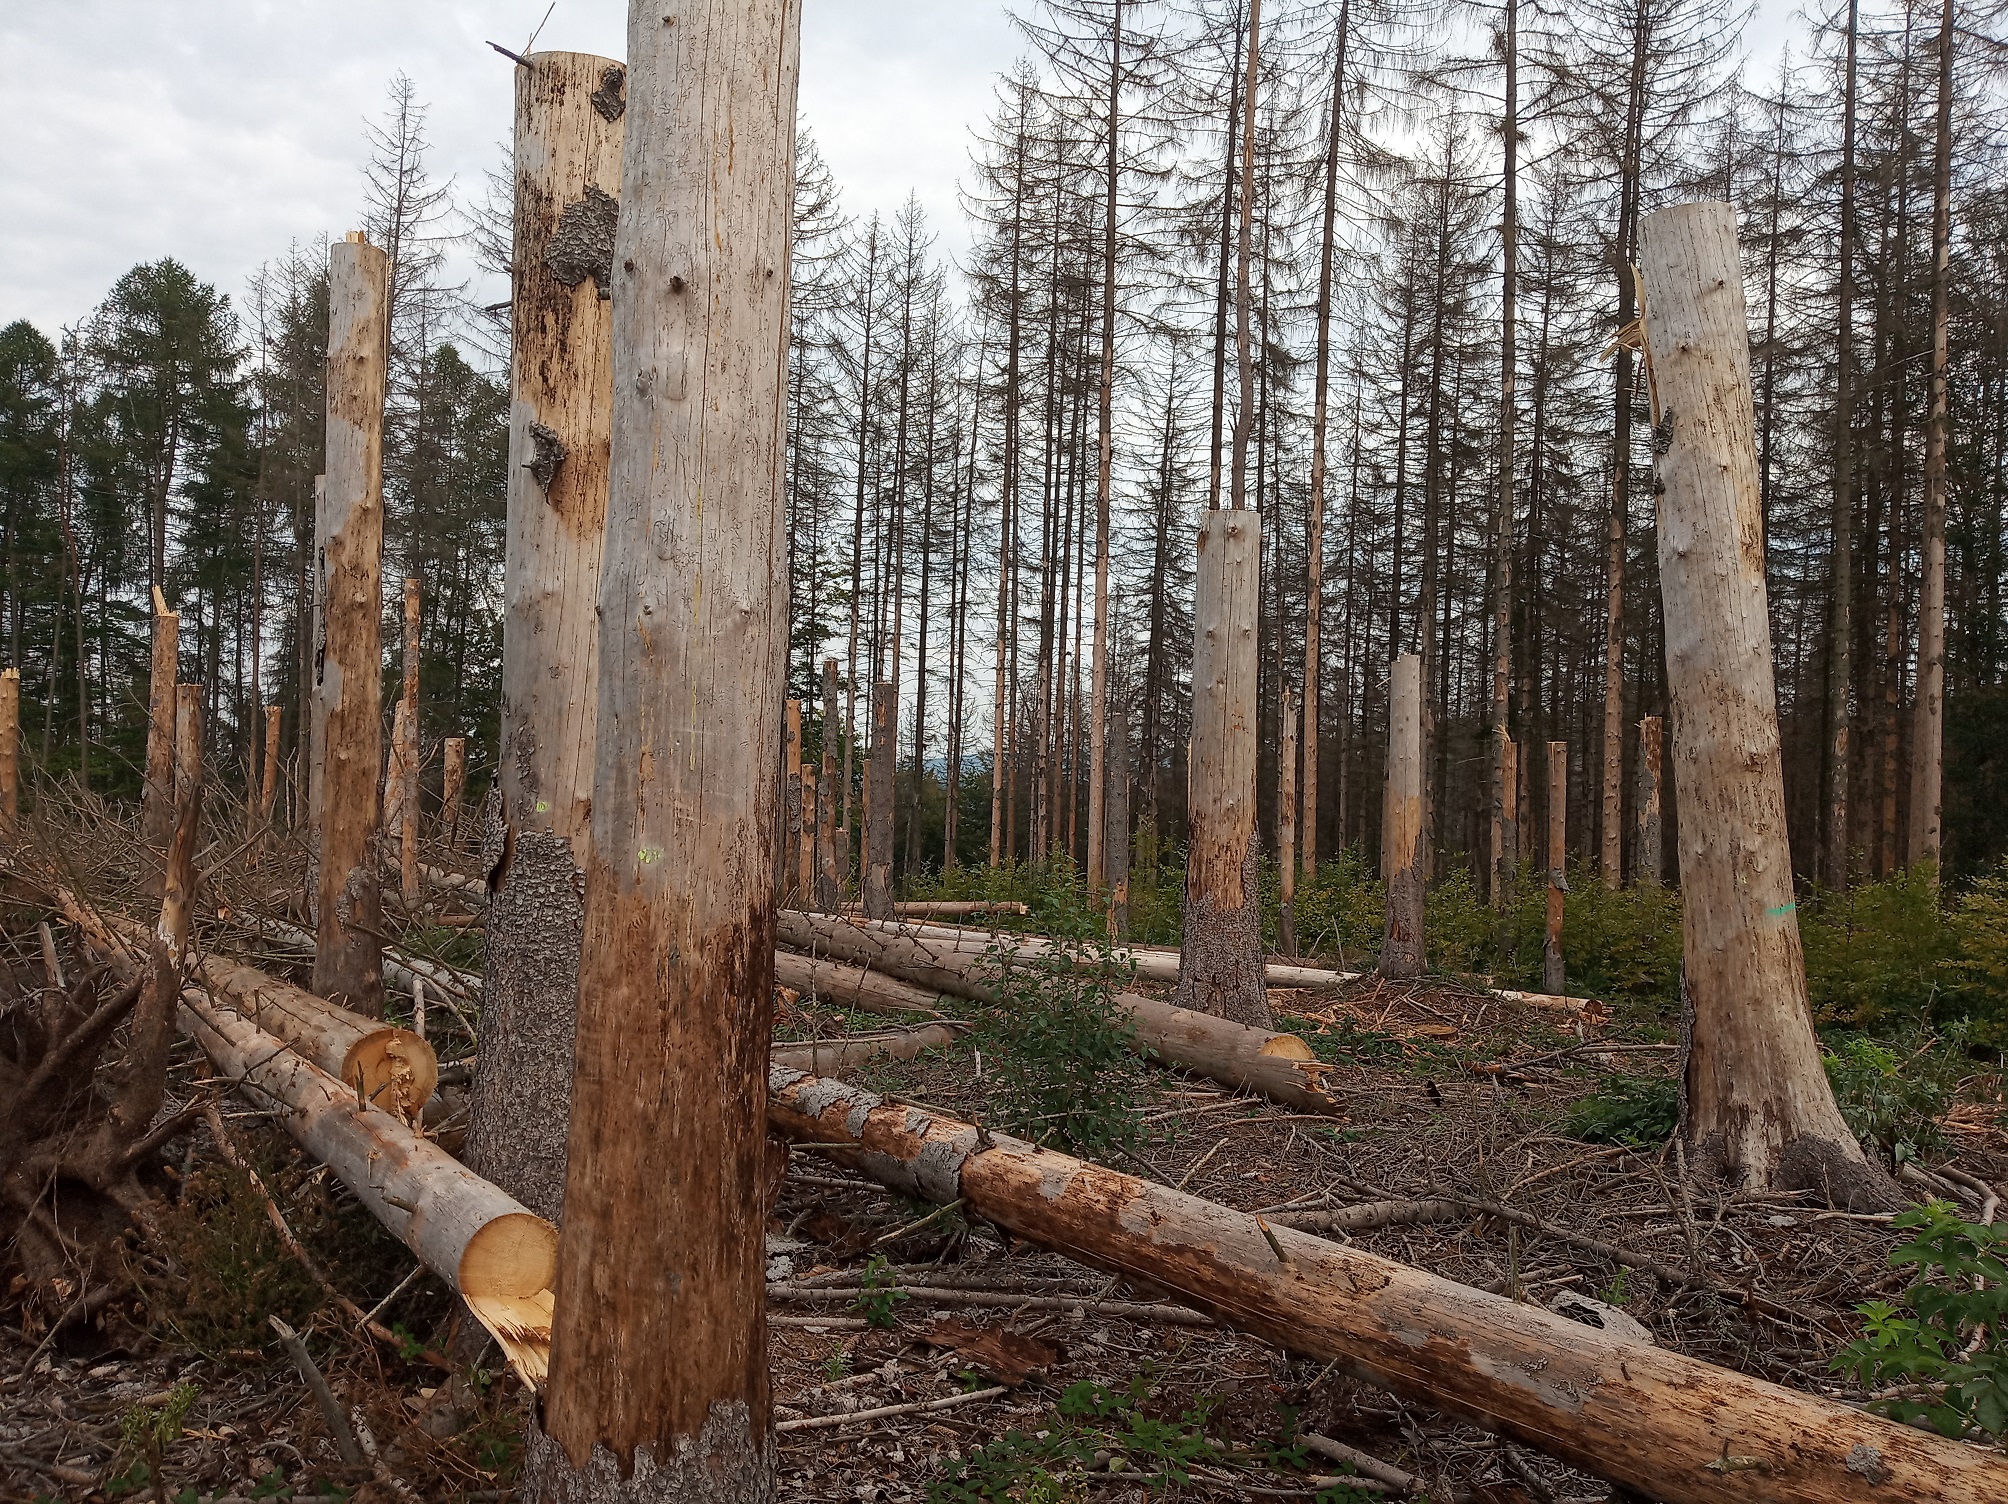 V pozadí odrůstající nová generace lesa - buk lesní, který by zde s jedlí bělokorou měl v budoucnu nahradit odumřelý smrk. (foto: Aleš Kopecký))